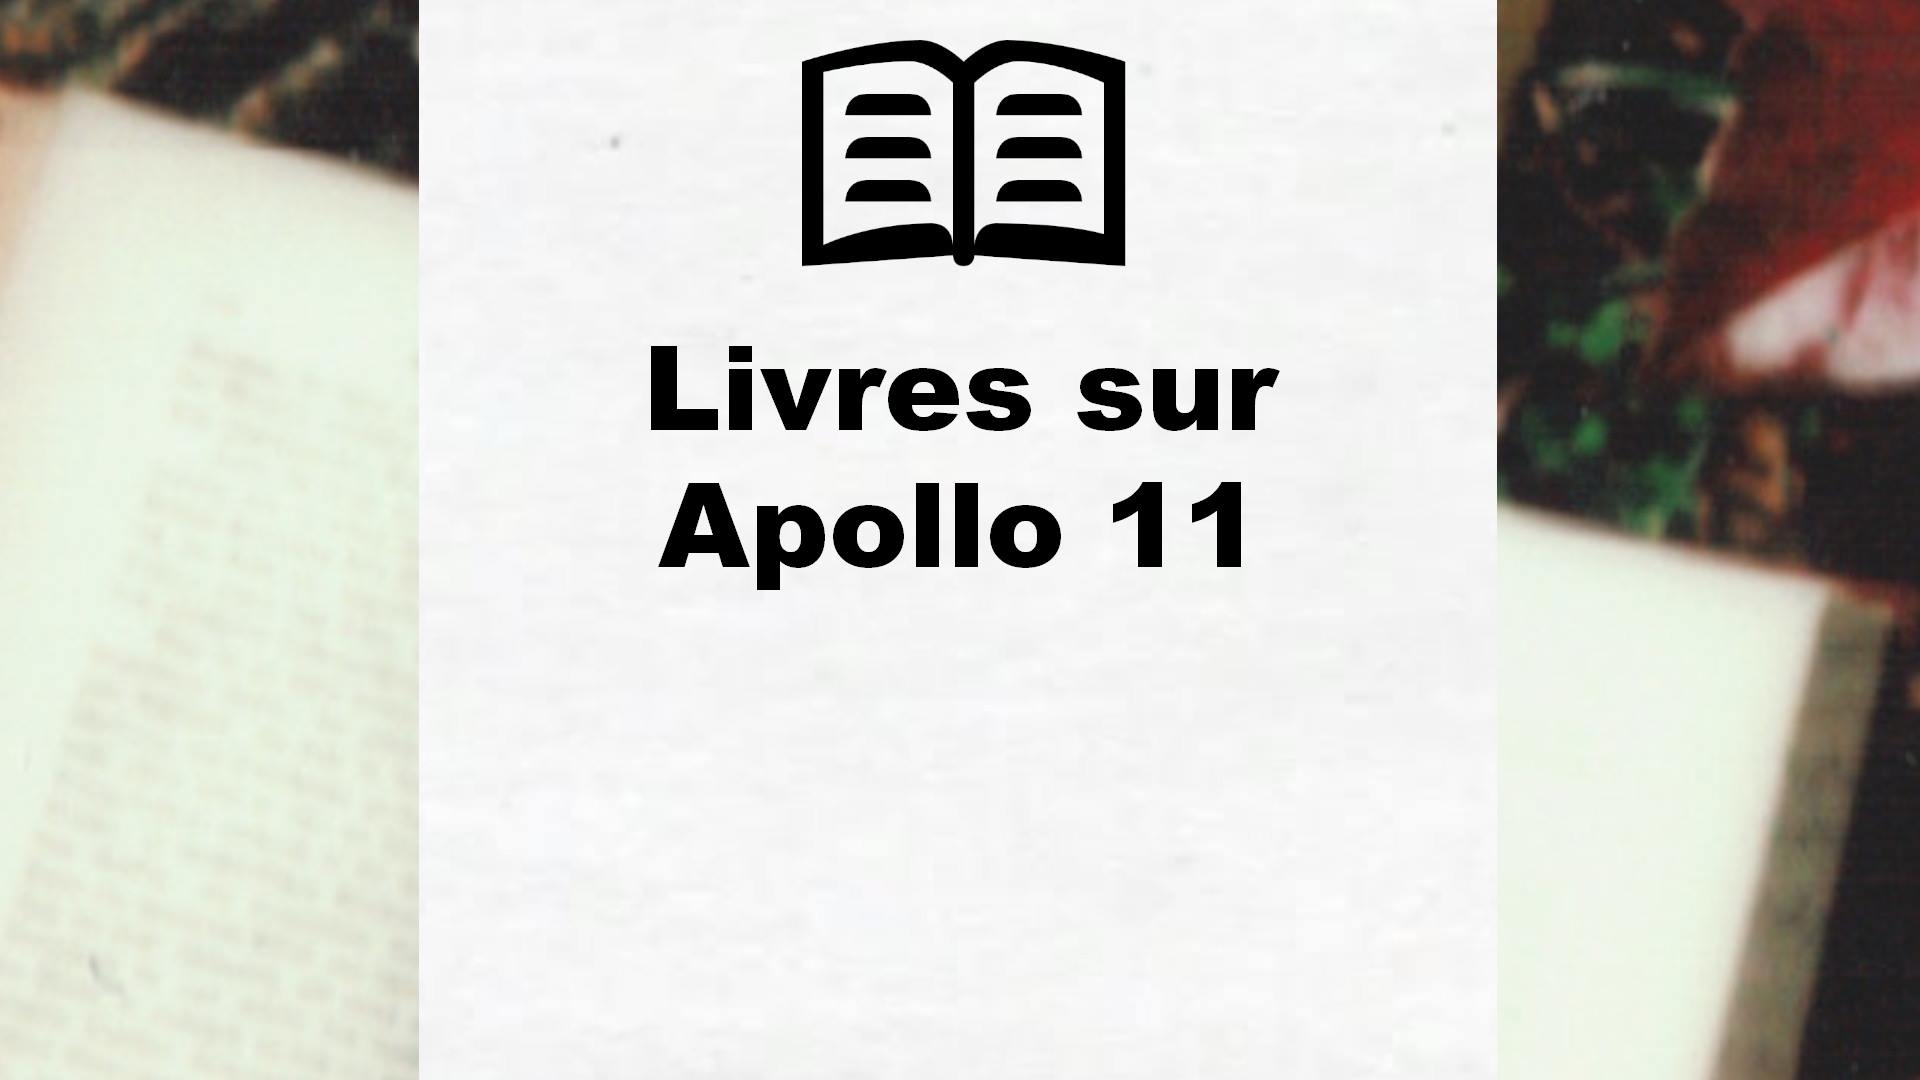 Livres sur Apollo 11